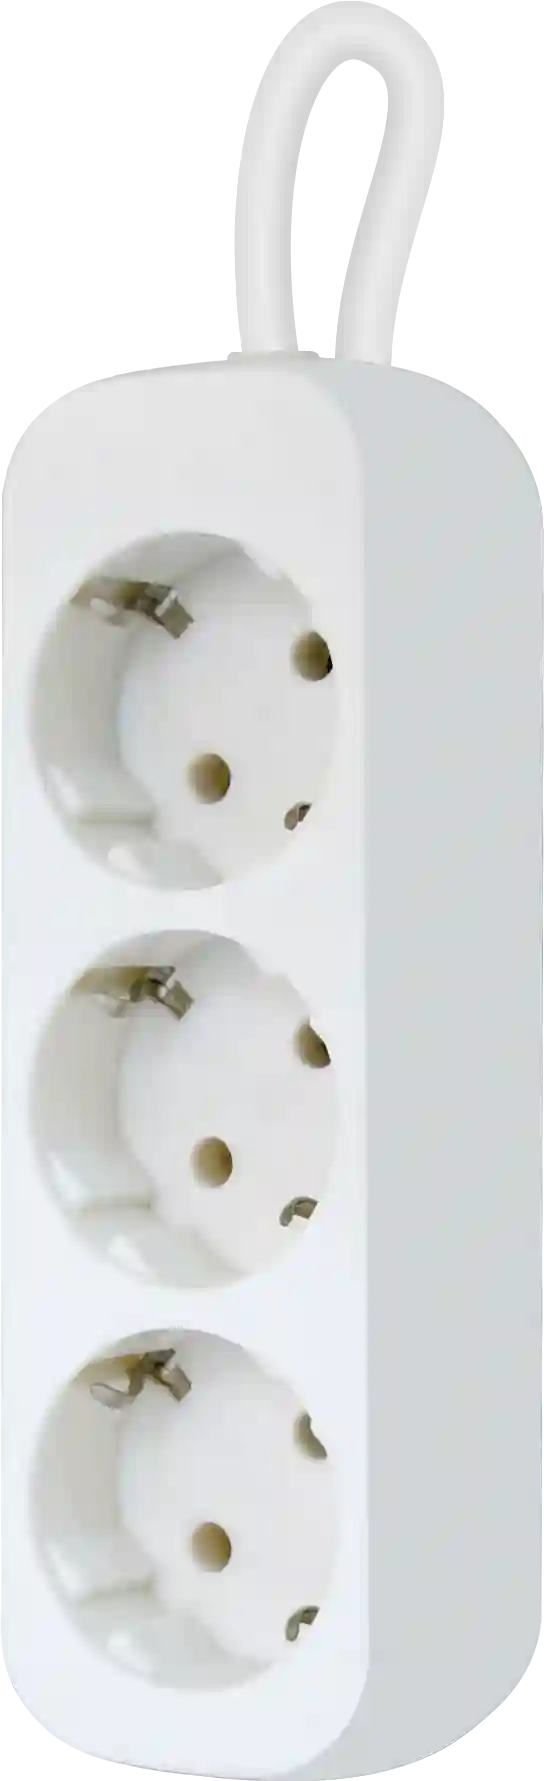 Удлинитель с заземлением DEFENDER E350 5м White (99223)